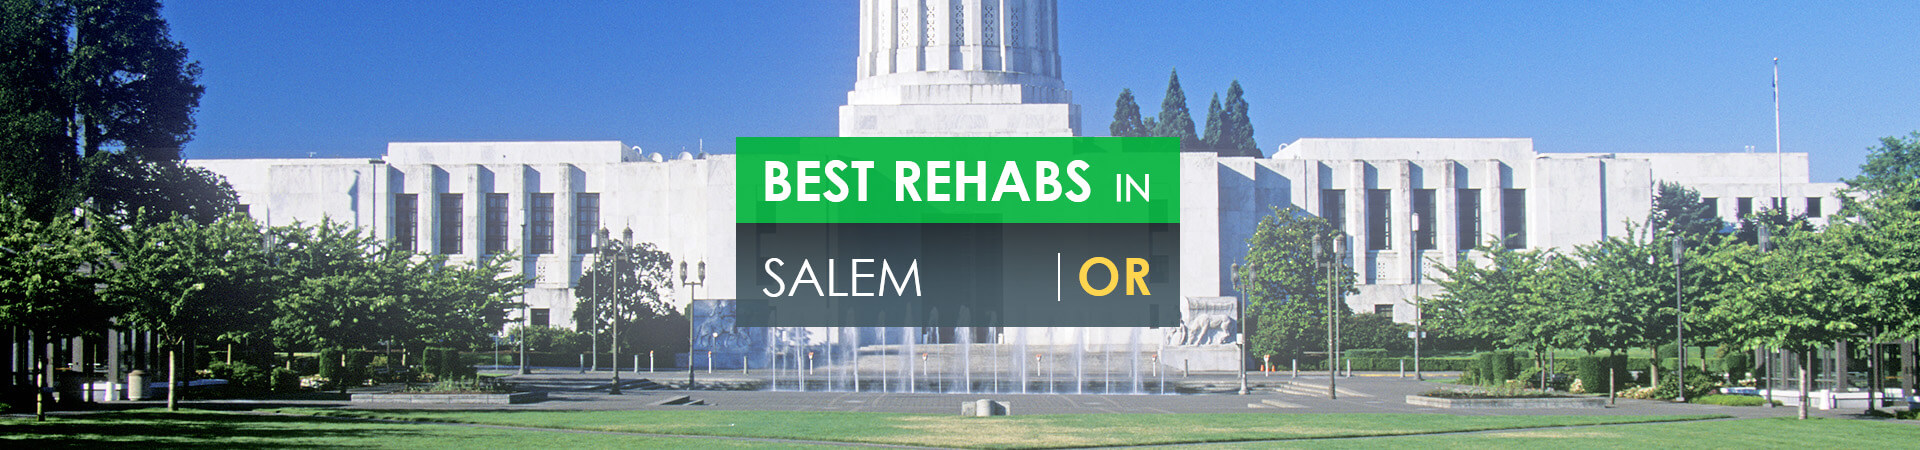 Best rehabs in Salem, OR